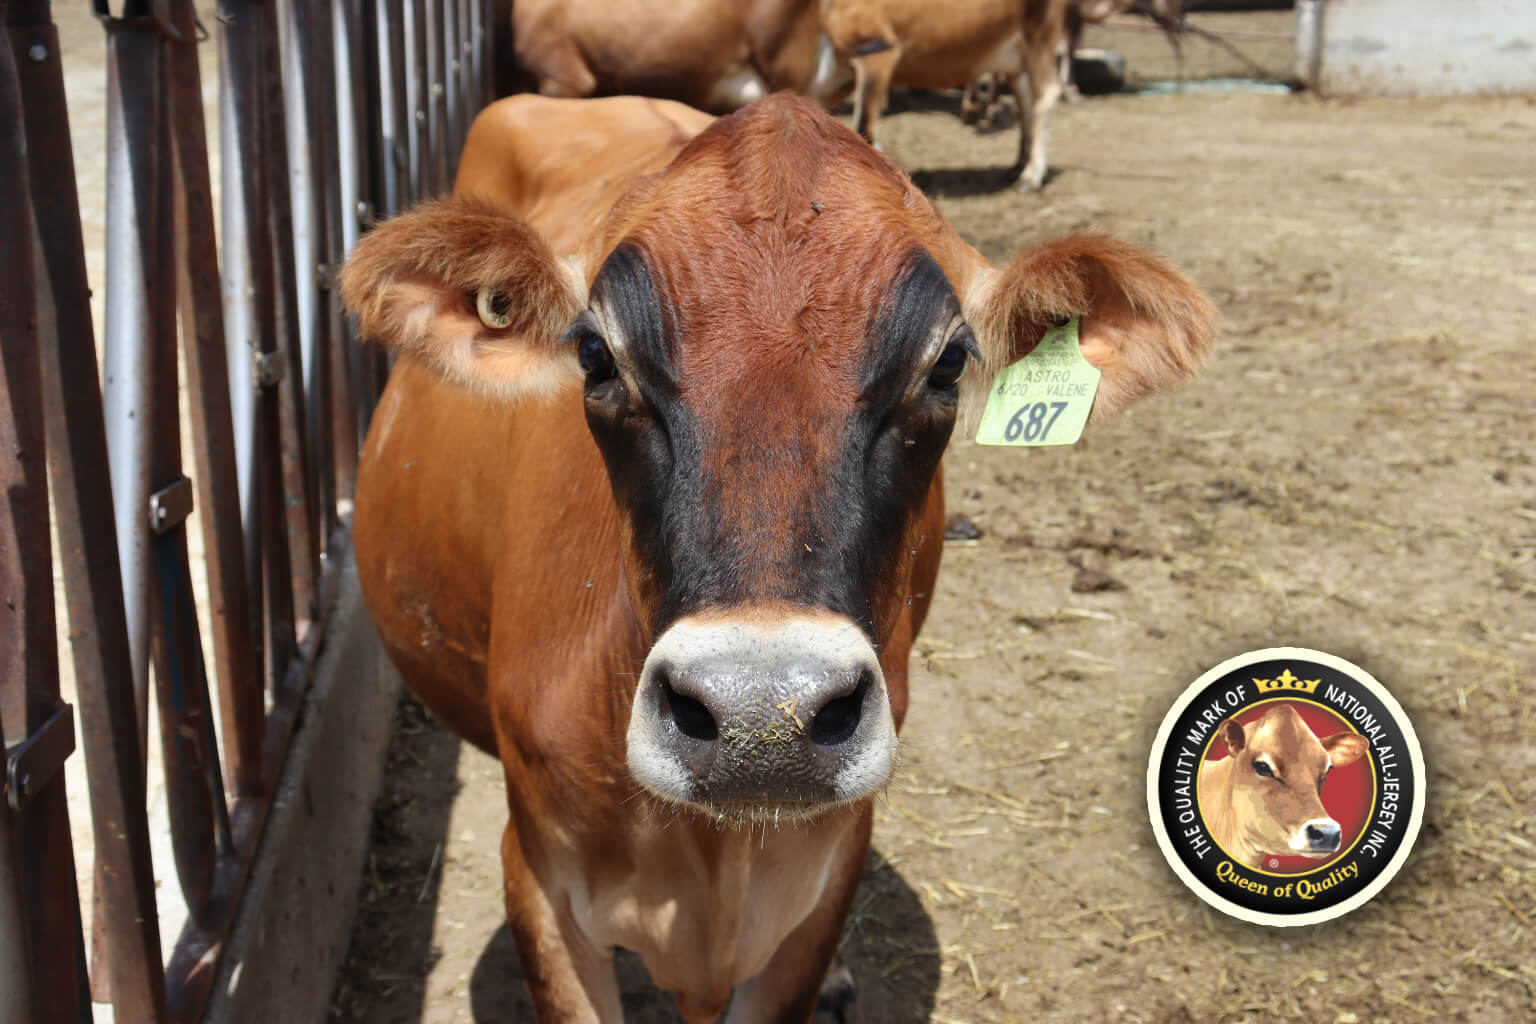 jersey cow in barn yard